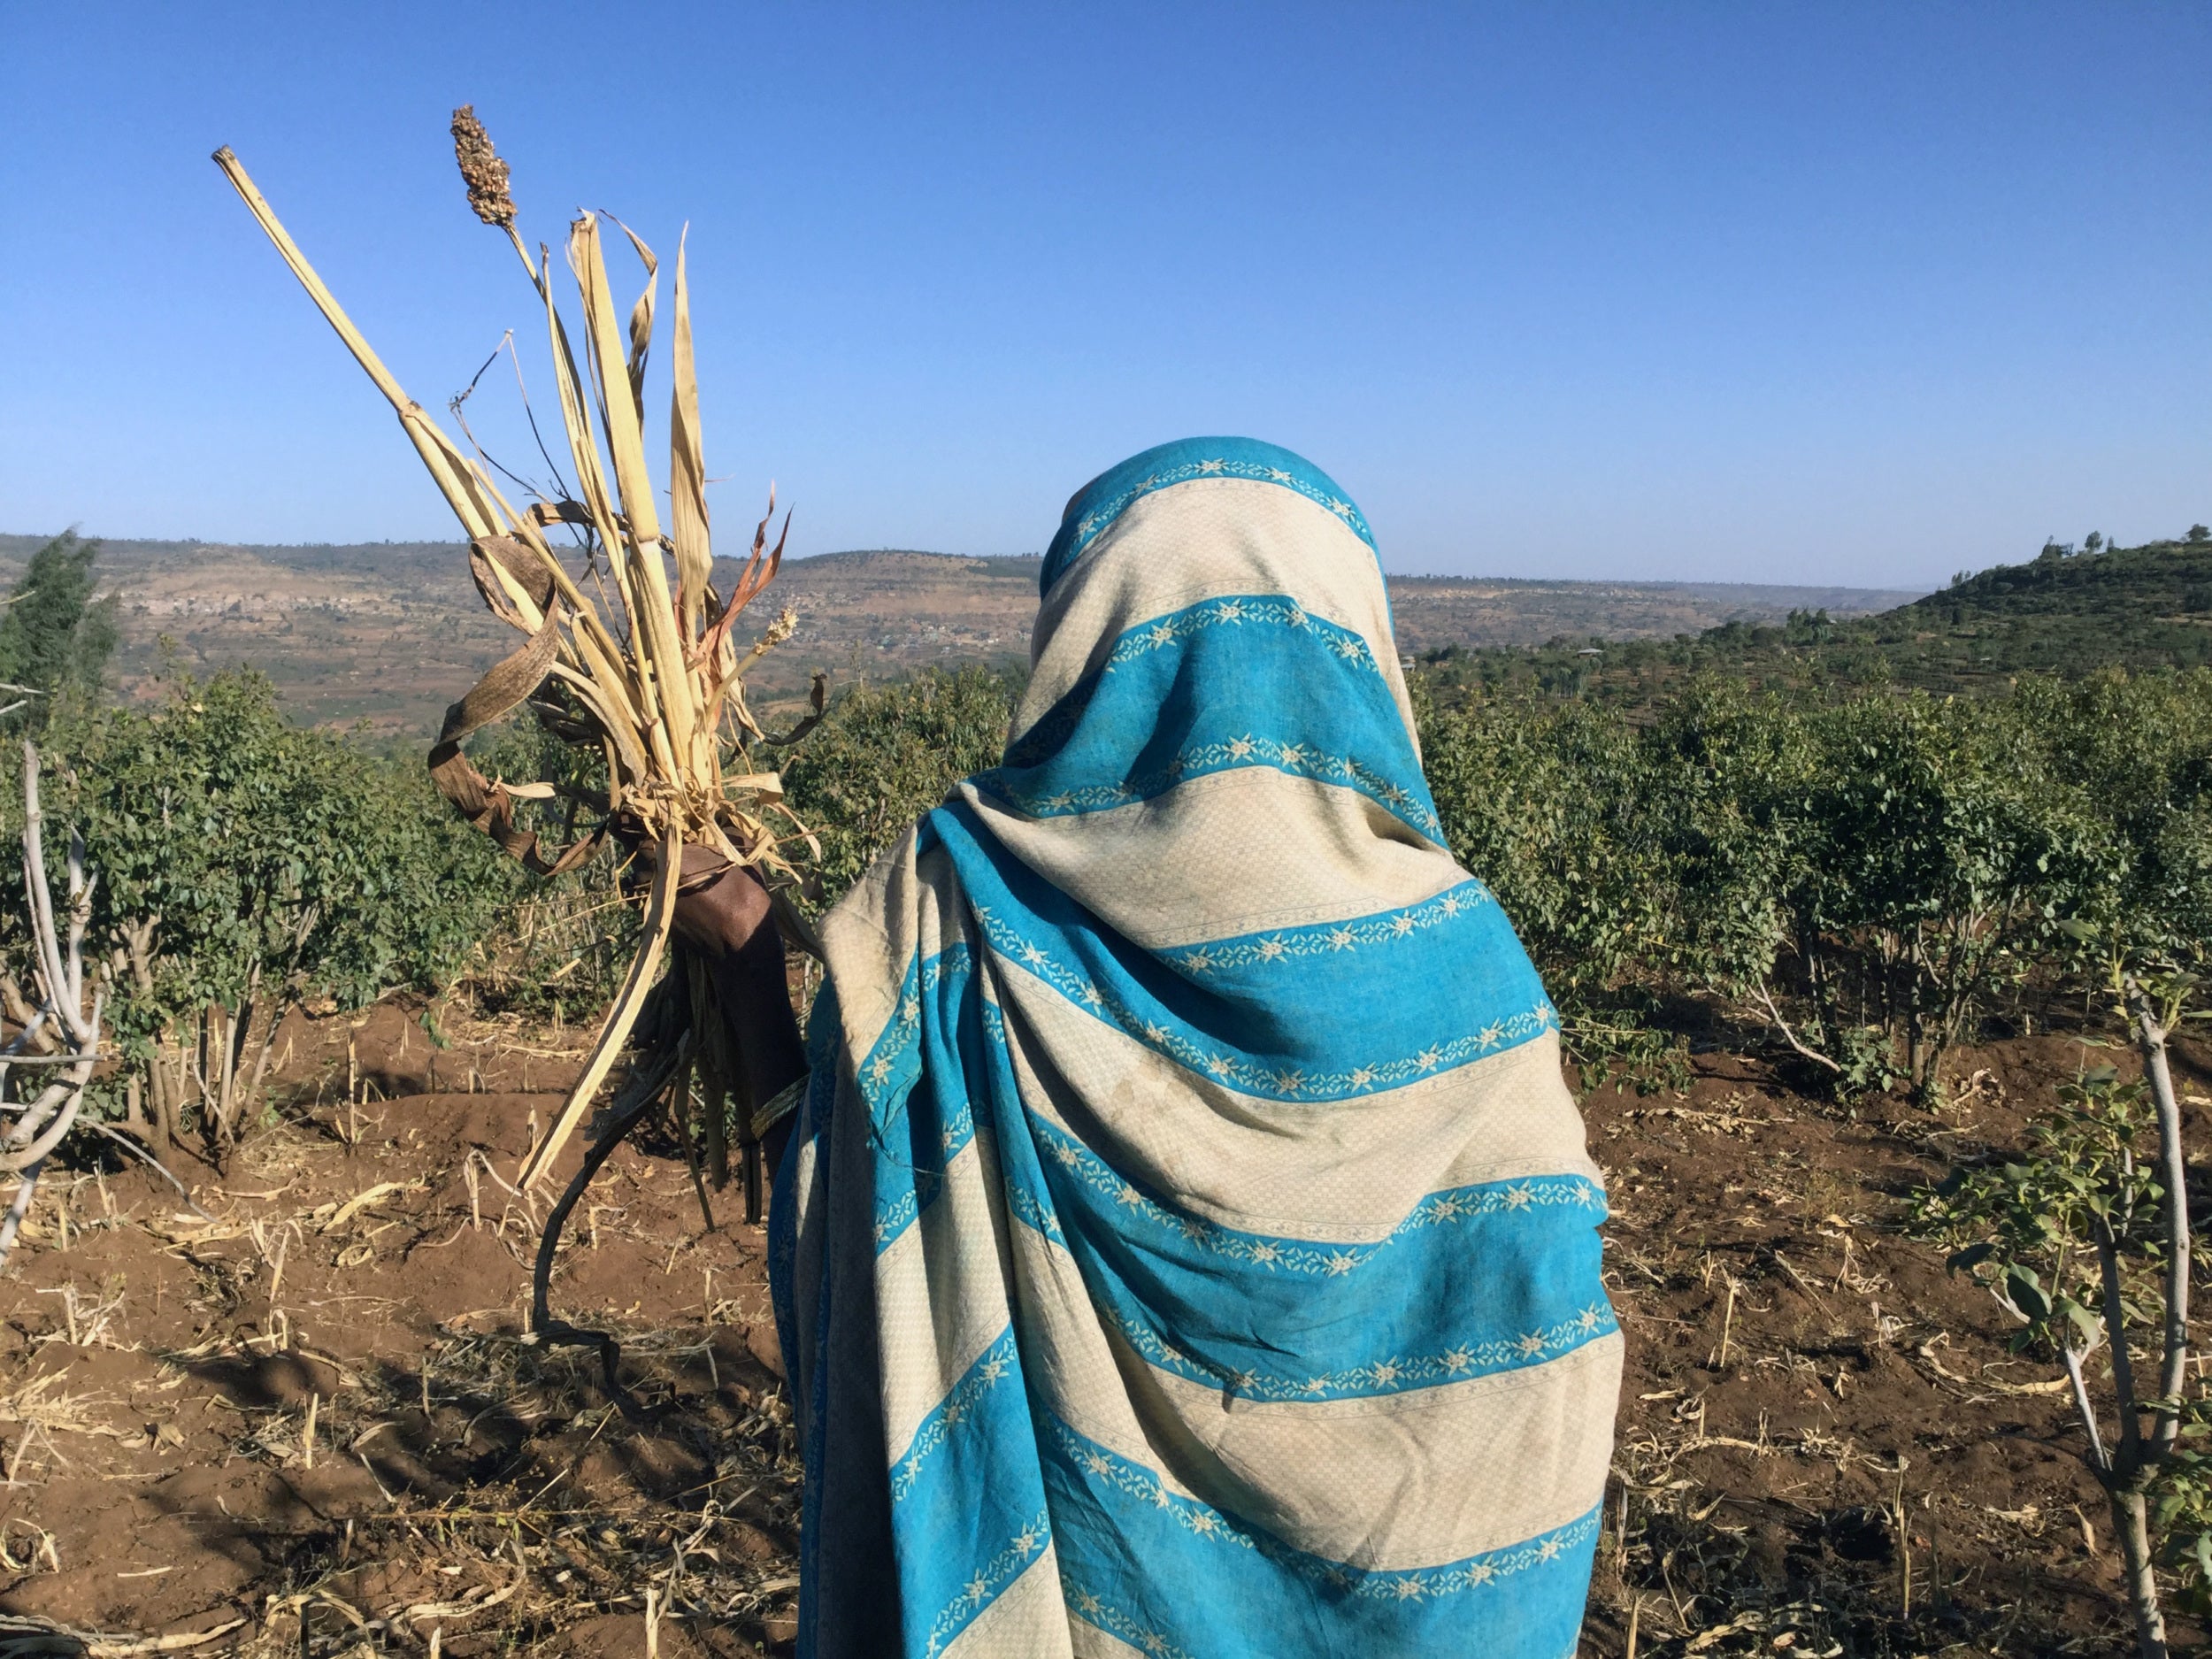 Amina Ame Usman evalúa sus campos de sorgo y el impacto de la sequía en su sustento. Fotos: JackyHabib / CARE